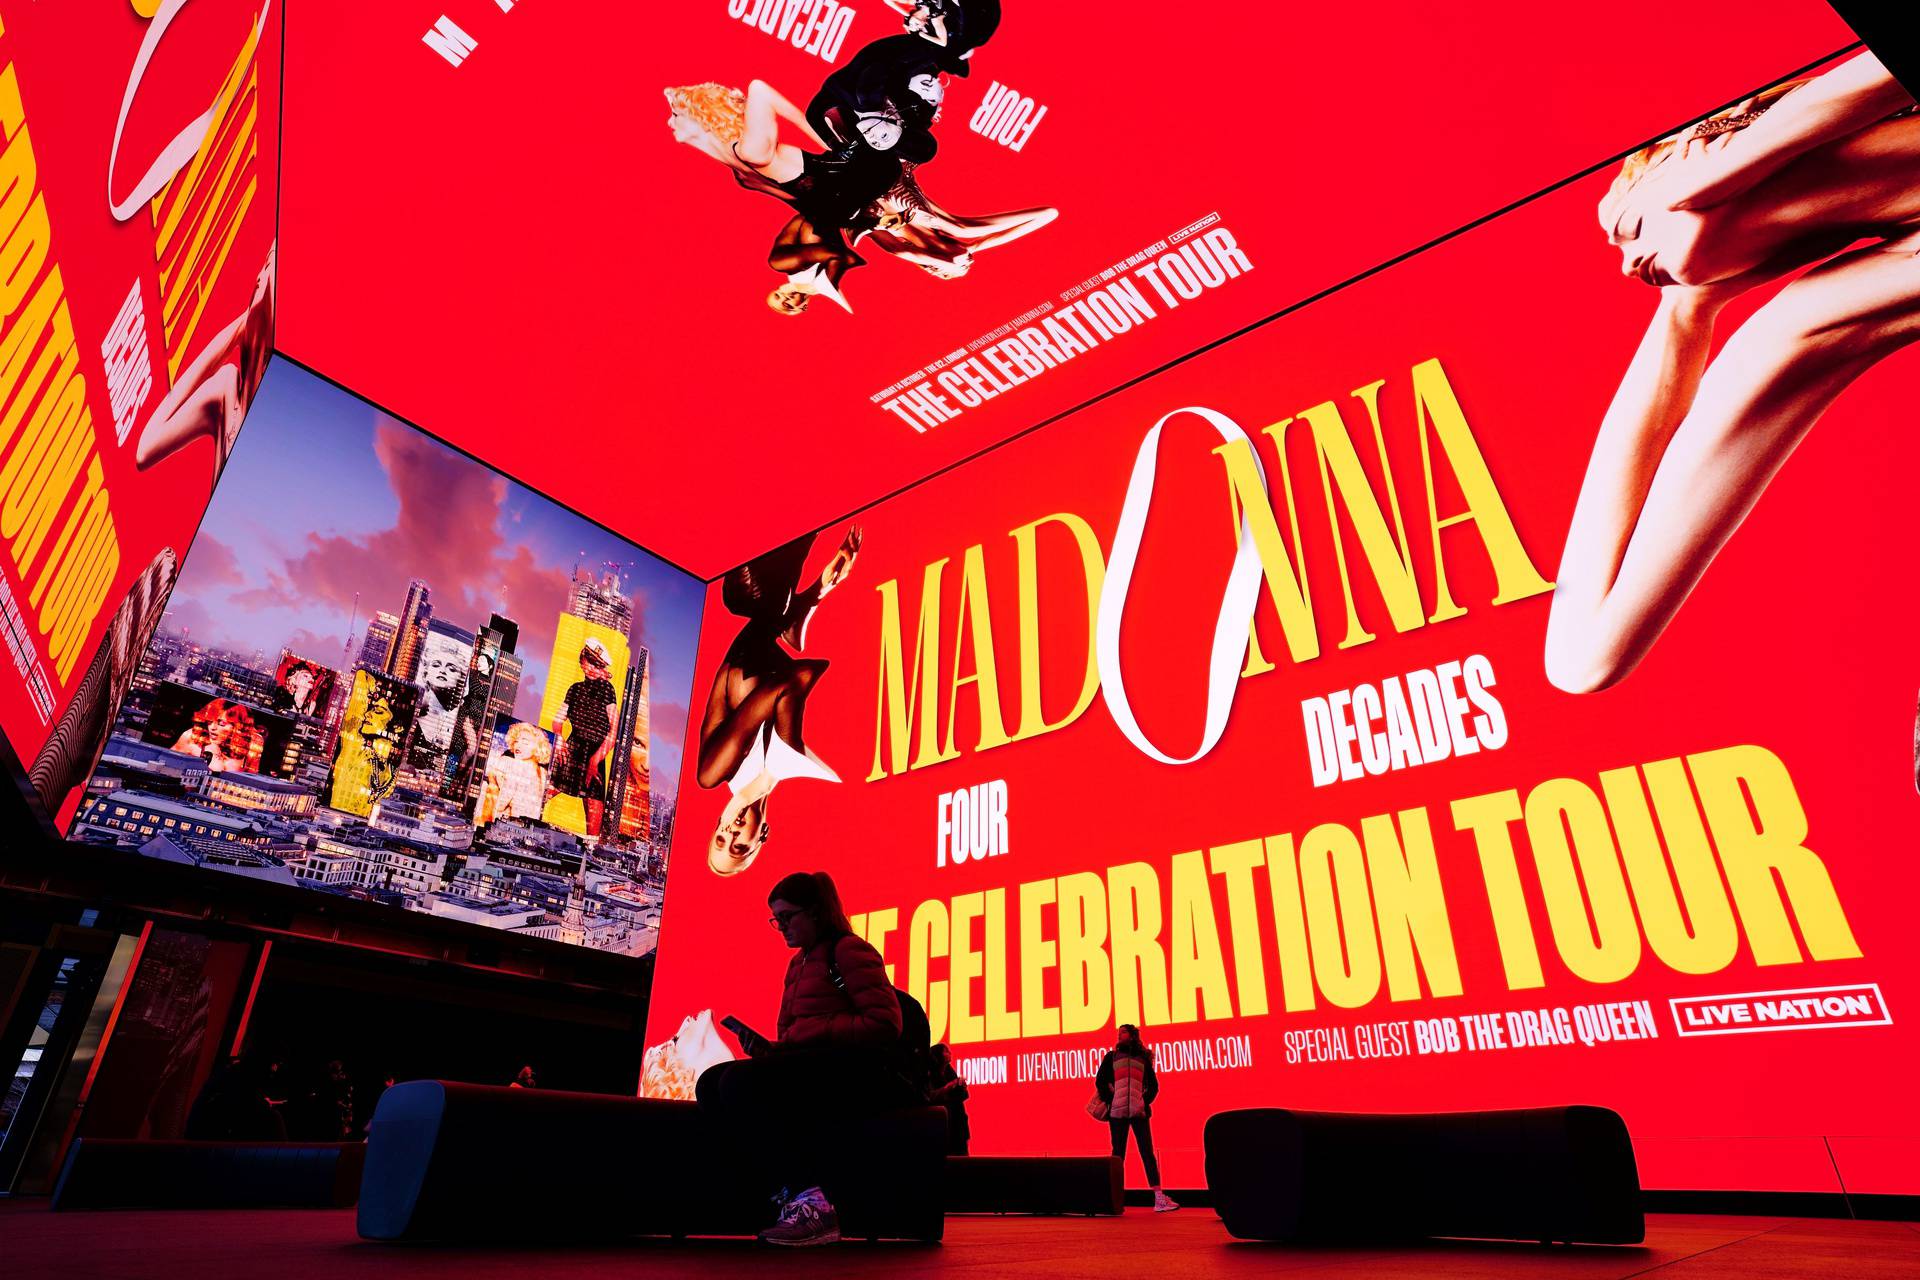 Kraljica popa posjetit ?e 35 gradova tijekom turneje Madonna: The Celebration Tour